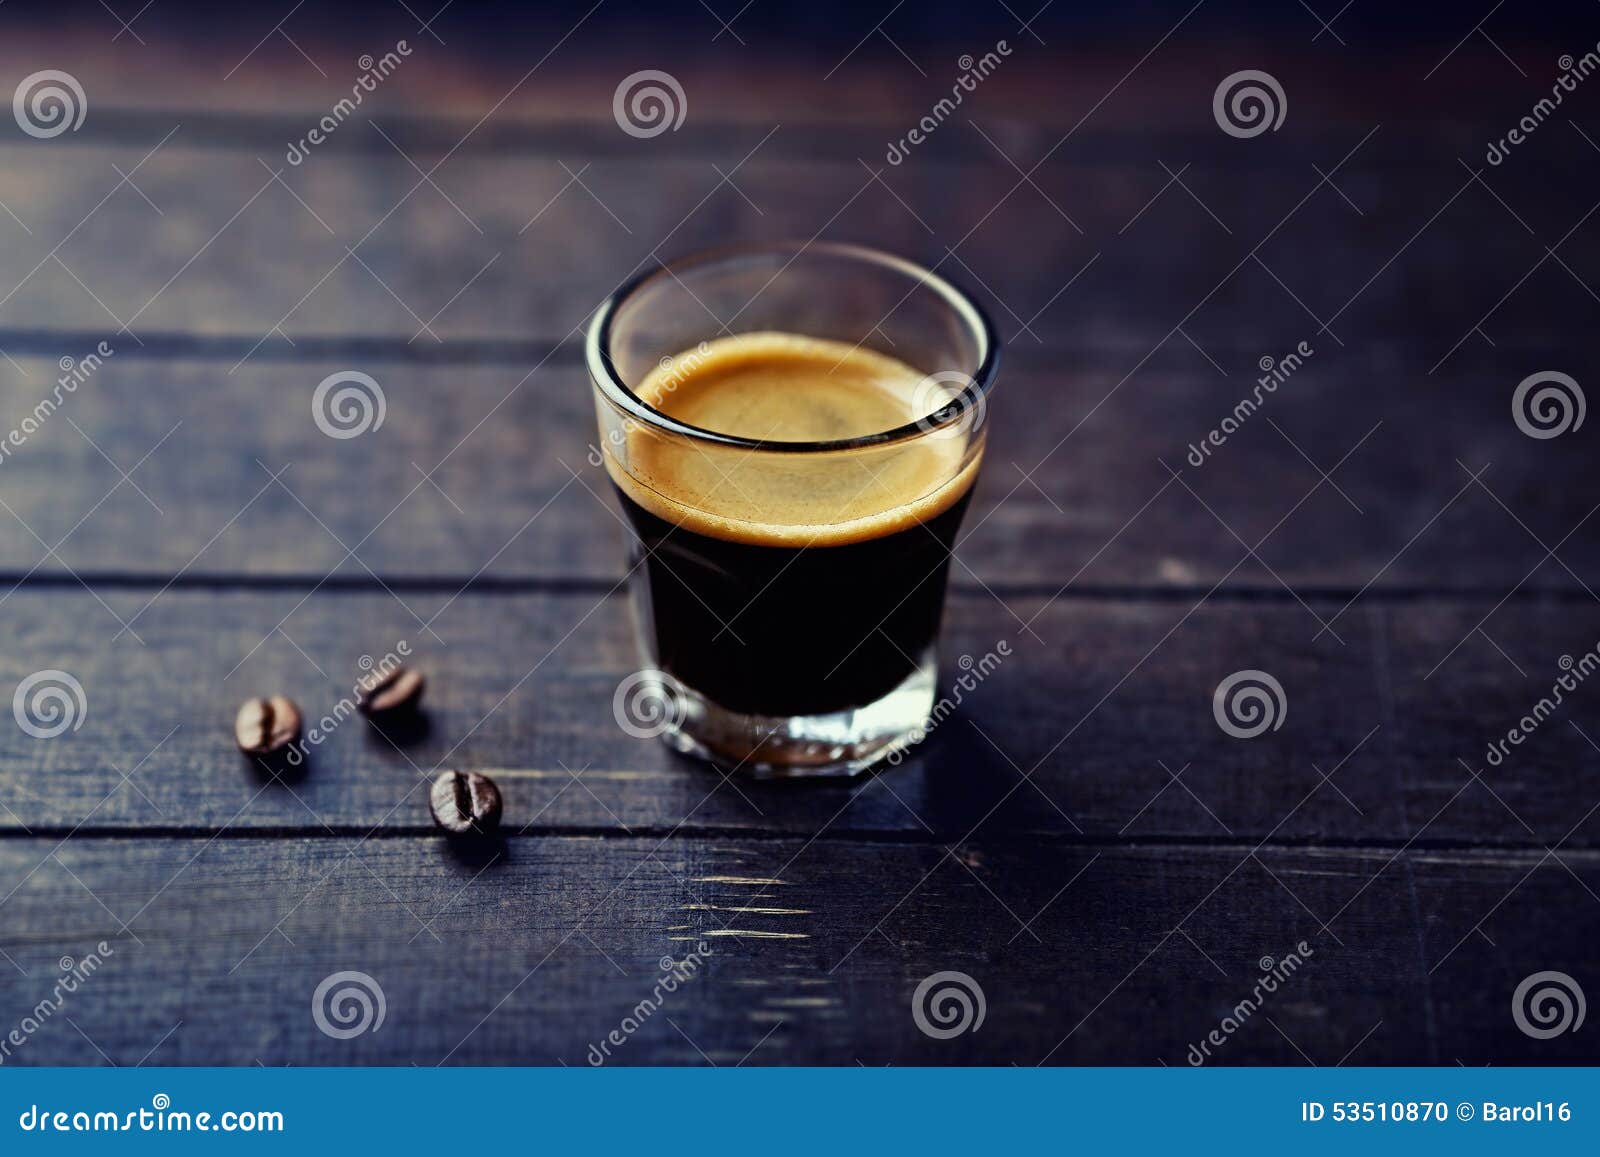 glass of espresso